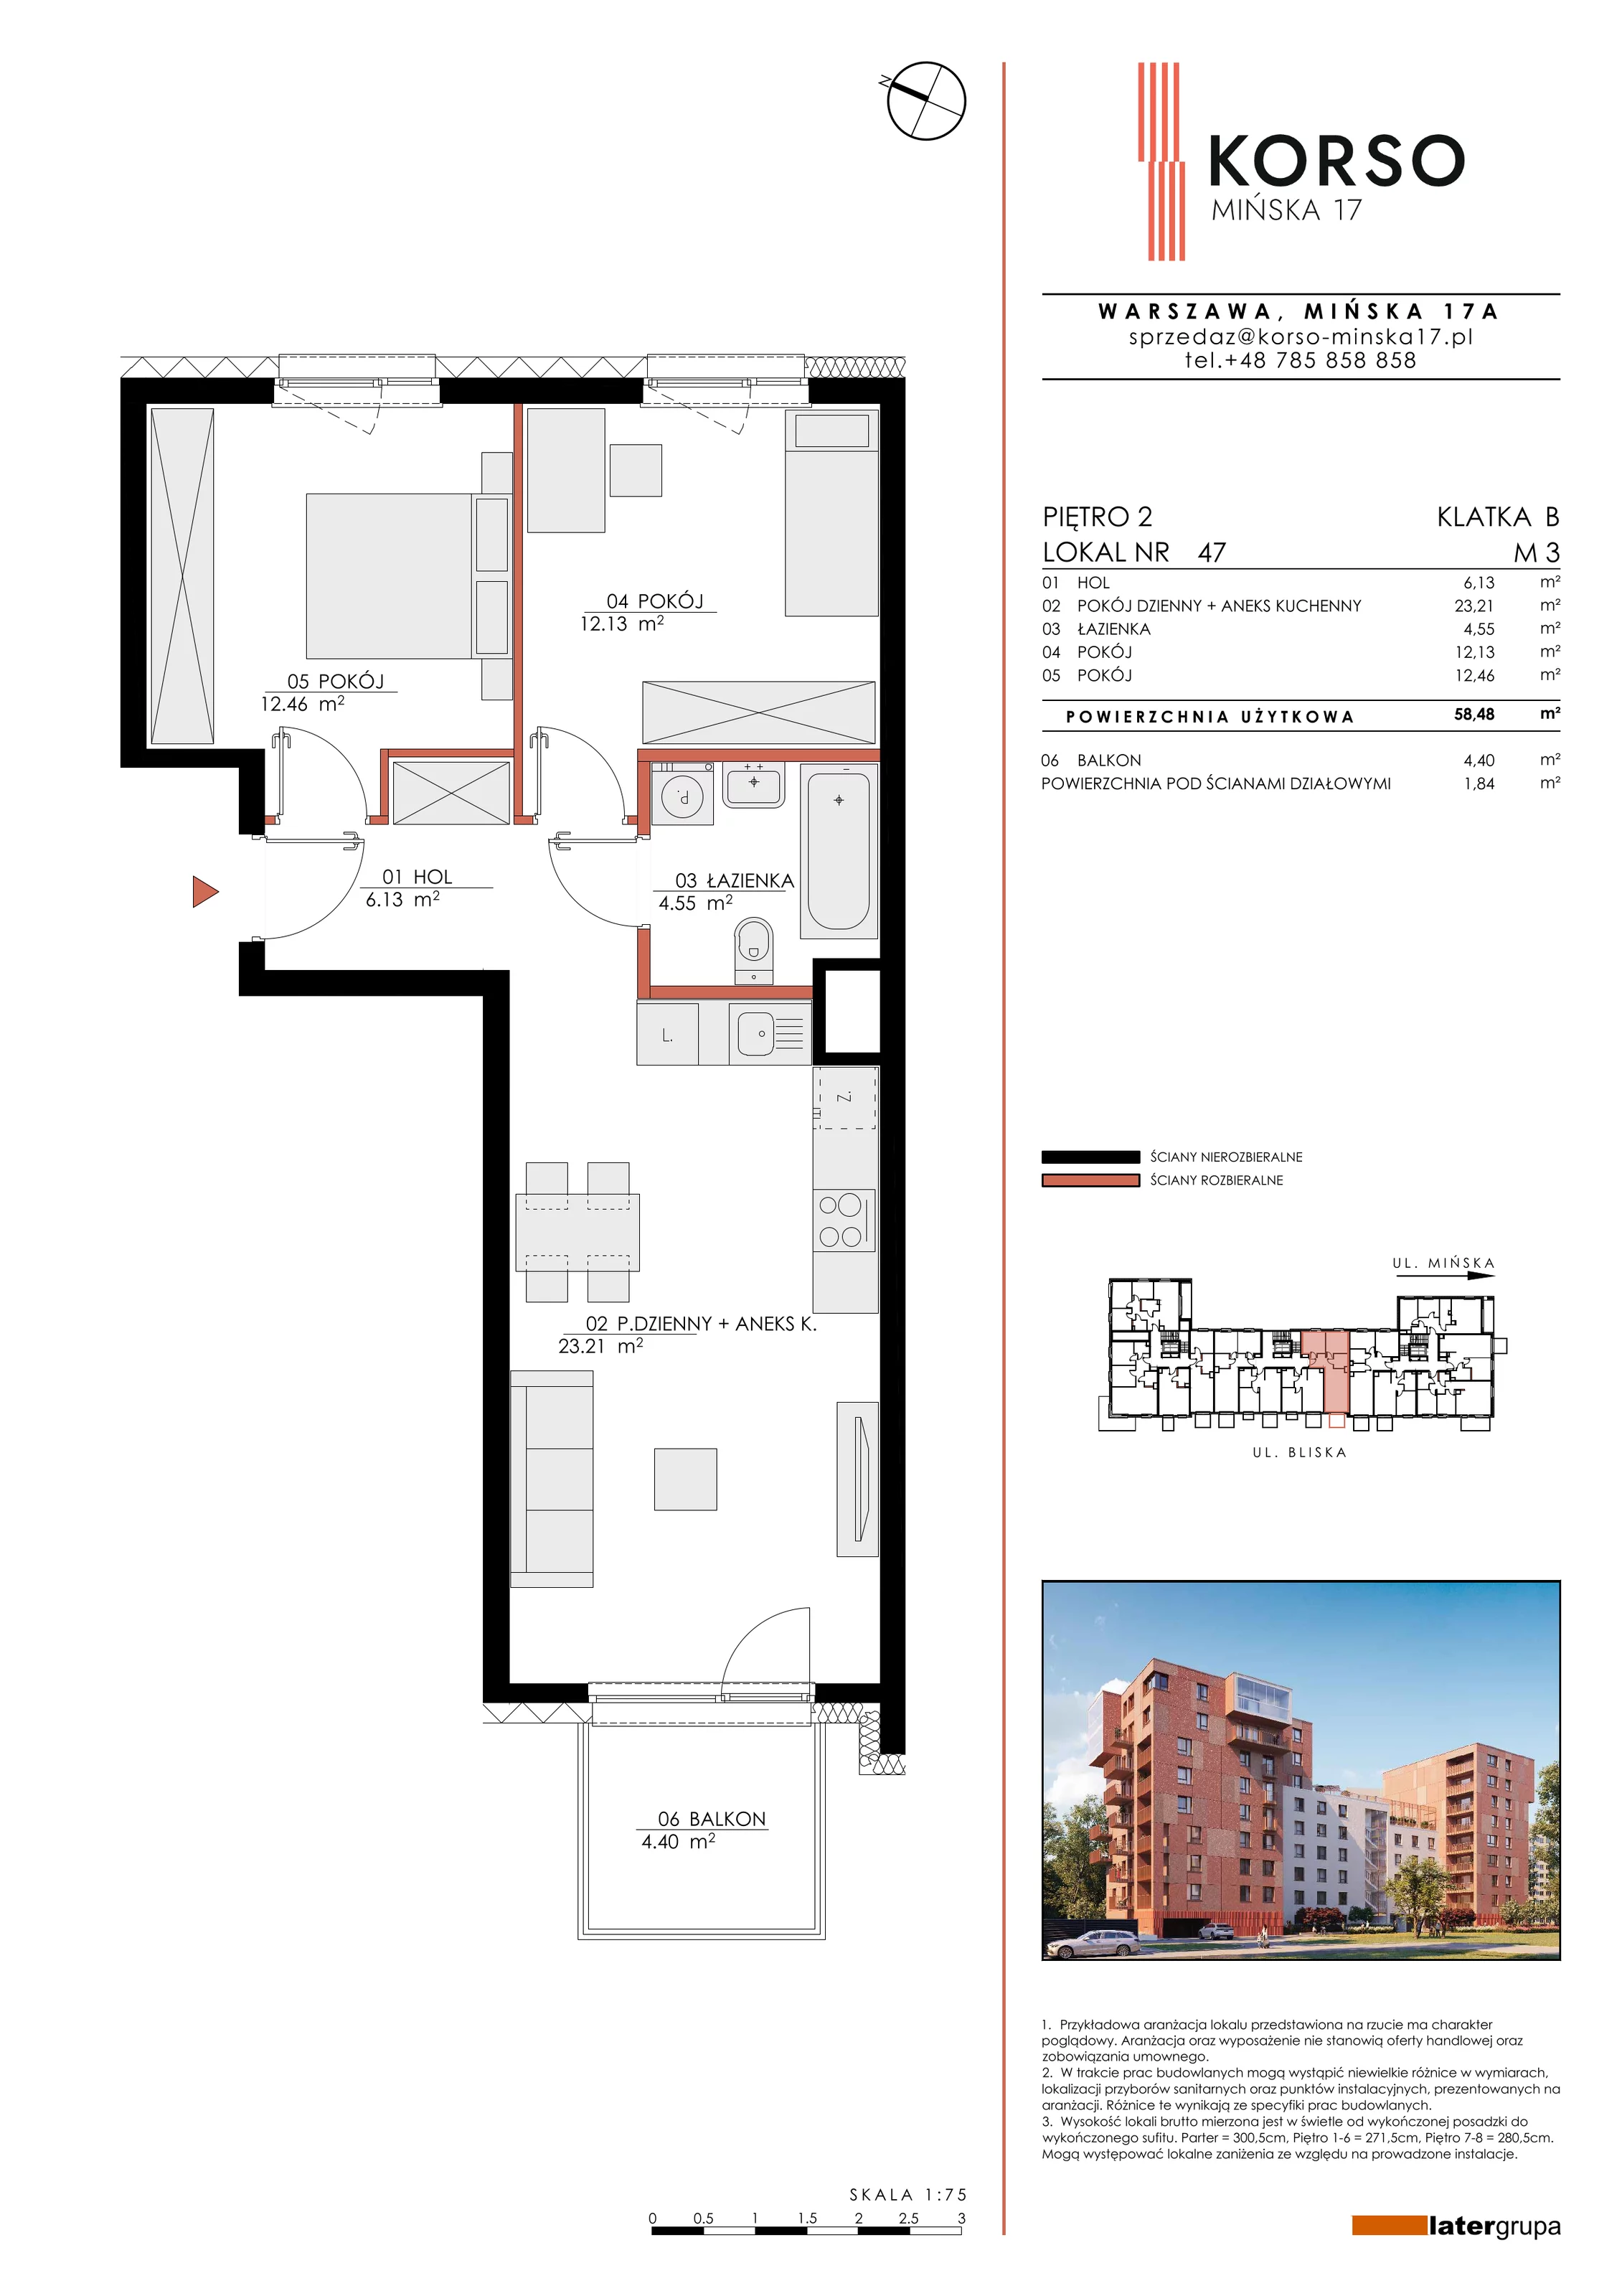 Mieszkanie 58,48 m², piętro 2, oferta nr 47, KORSO Mińska 17, Warszawa, Praga Południe, Kamionek, ul. Mińska 17